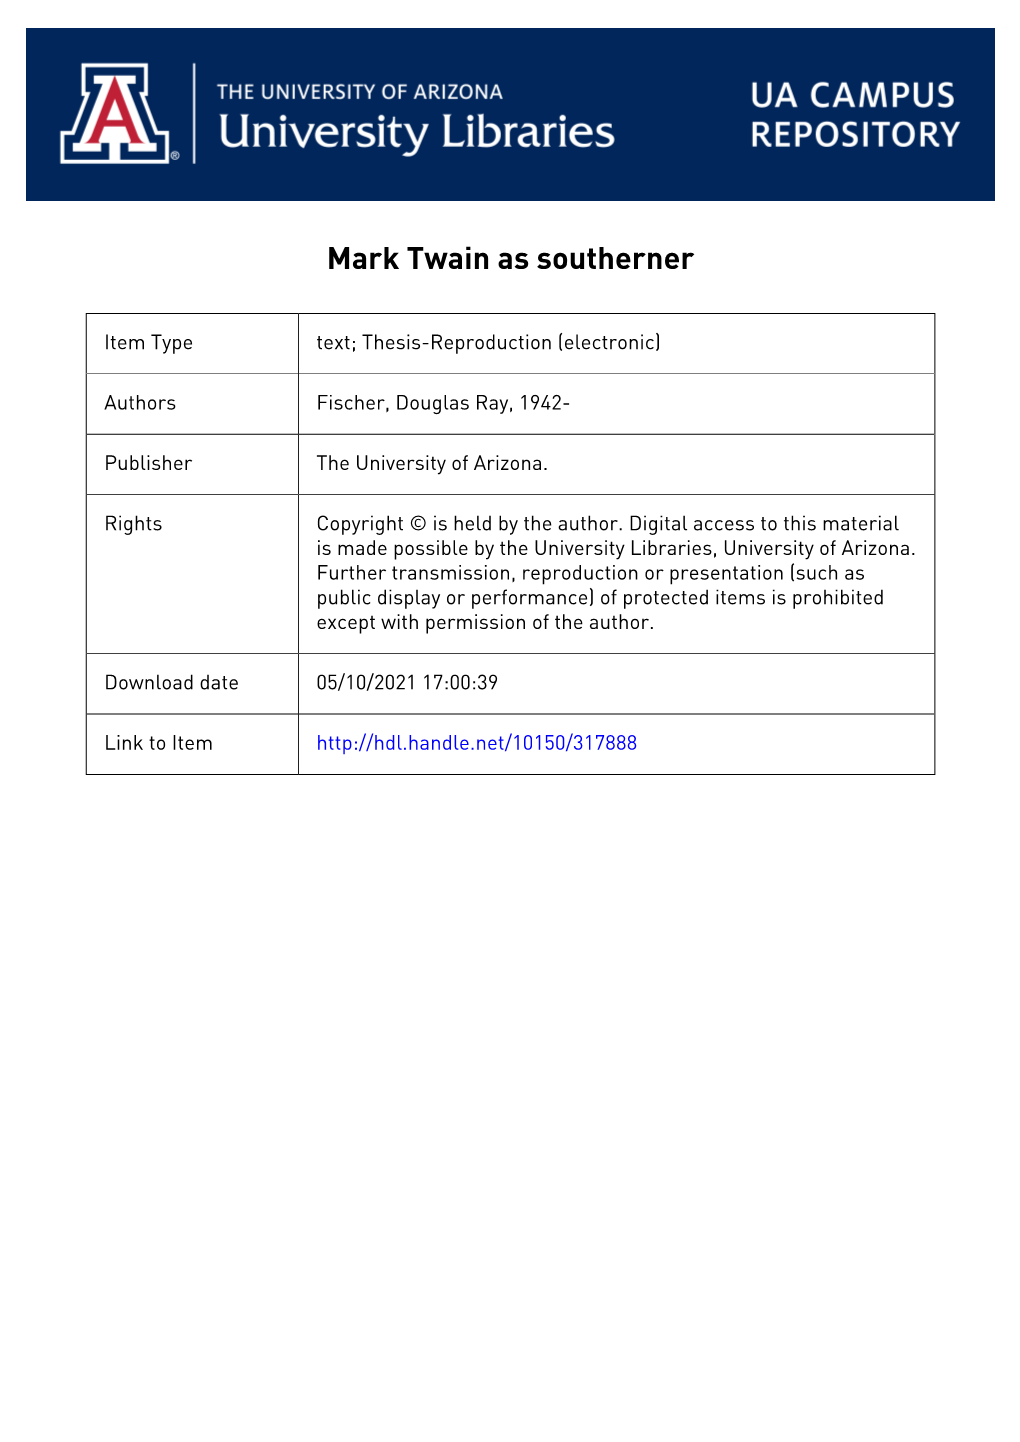 Mark Twain As Southerner